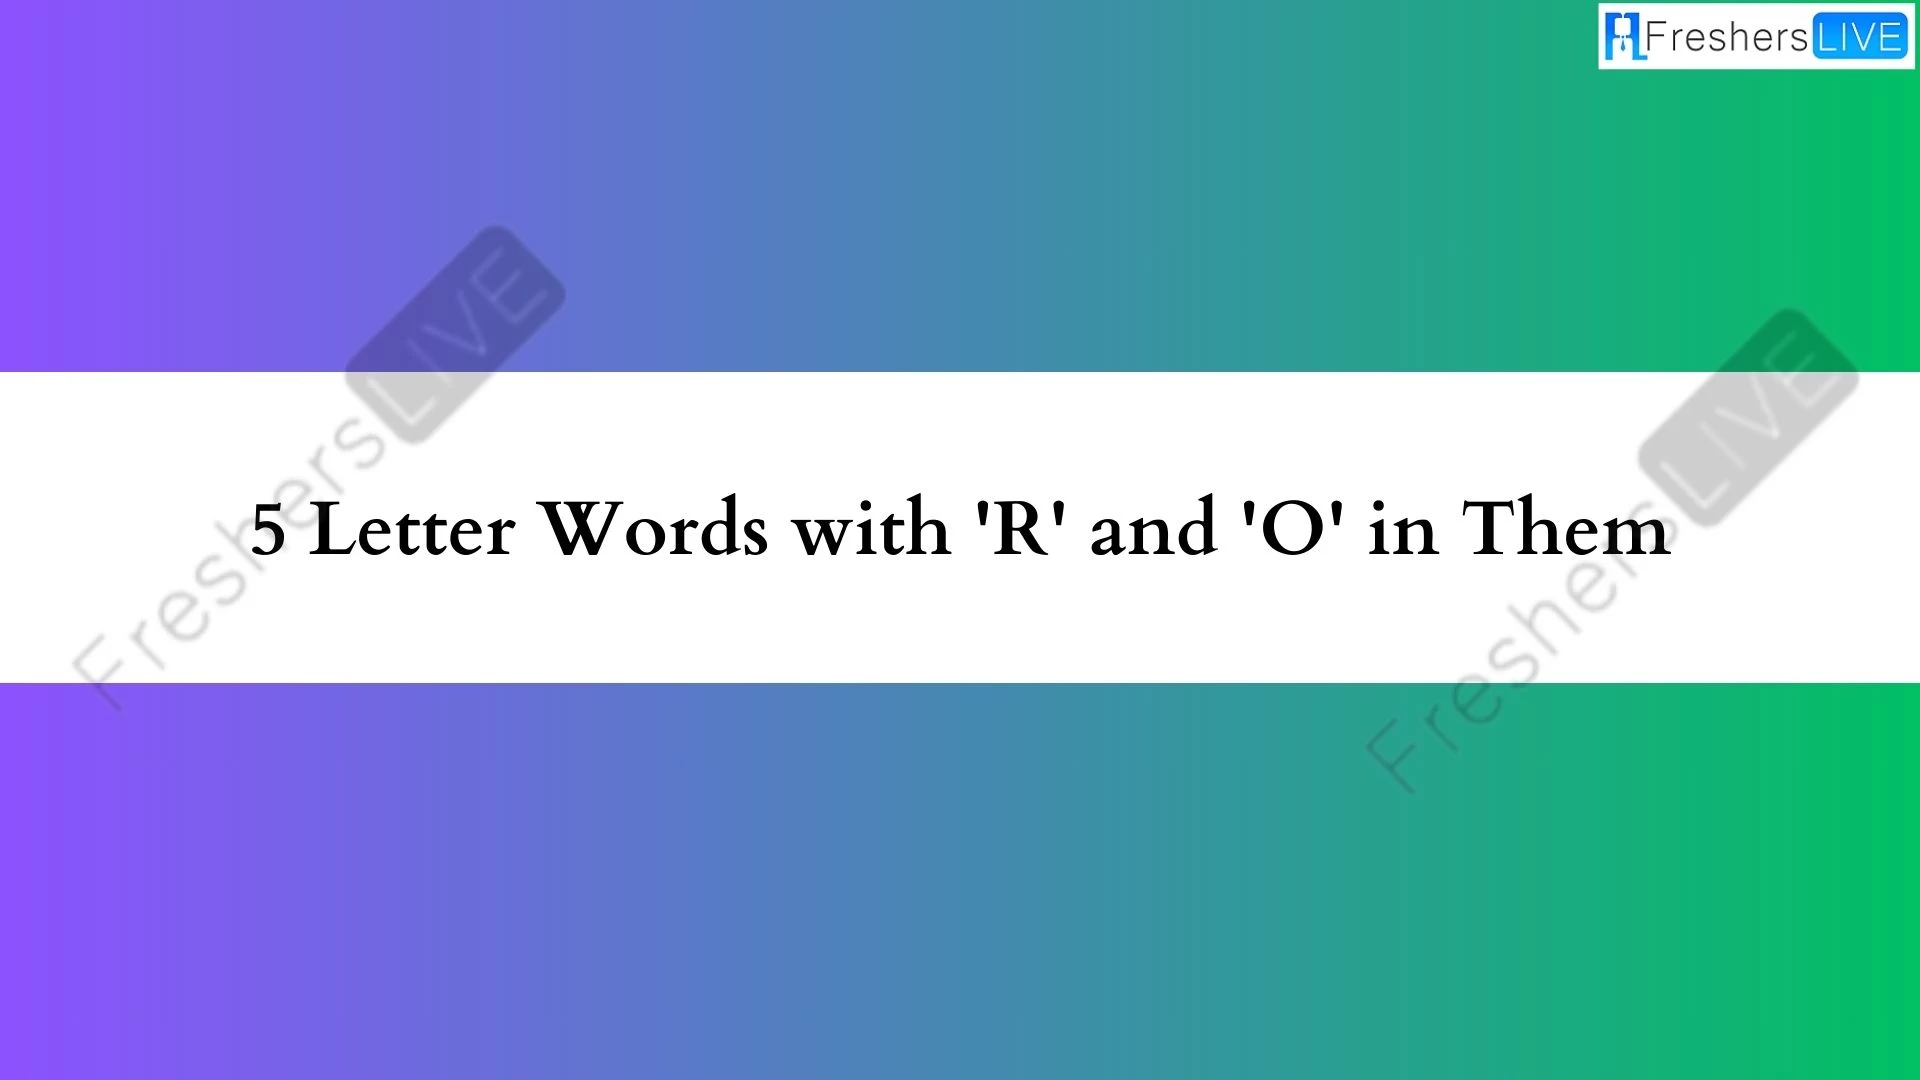 5 - Palabras con letras que contienen las letras "R" y "O".  Lista de todas las palabras.